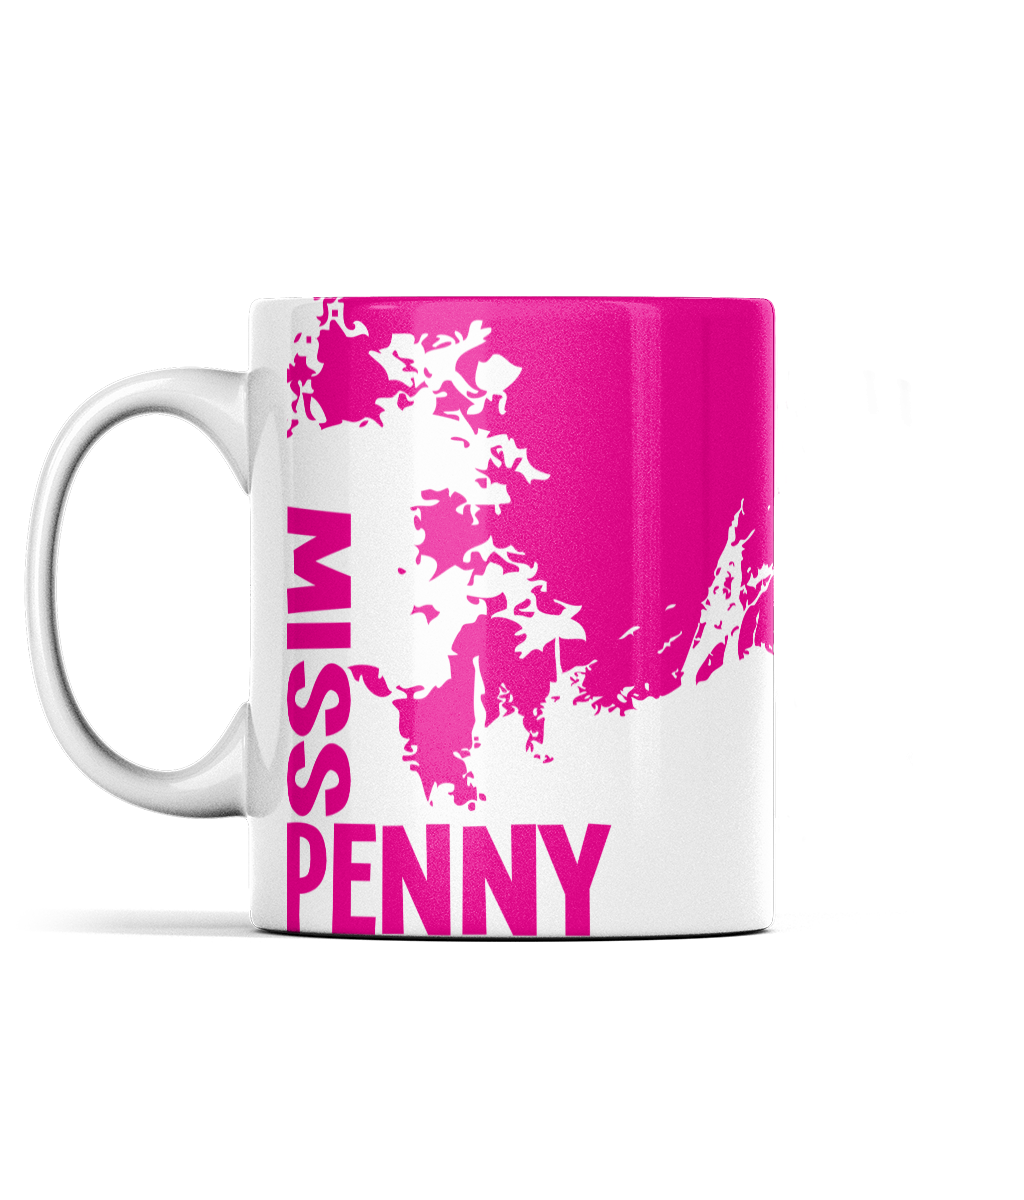 Miss Penny, abstract mug